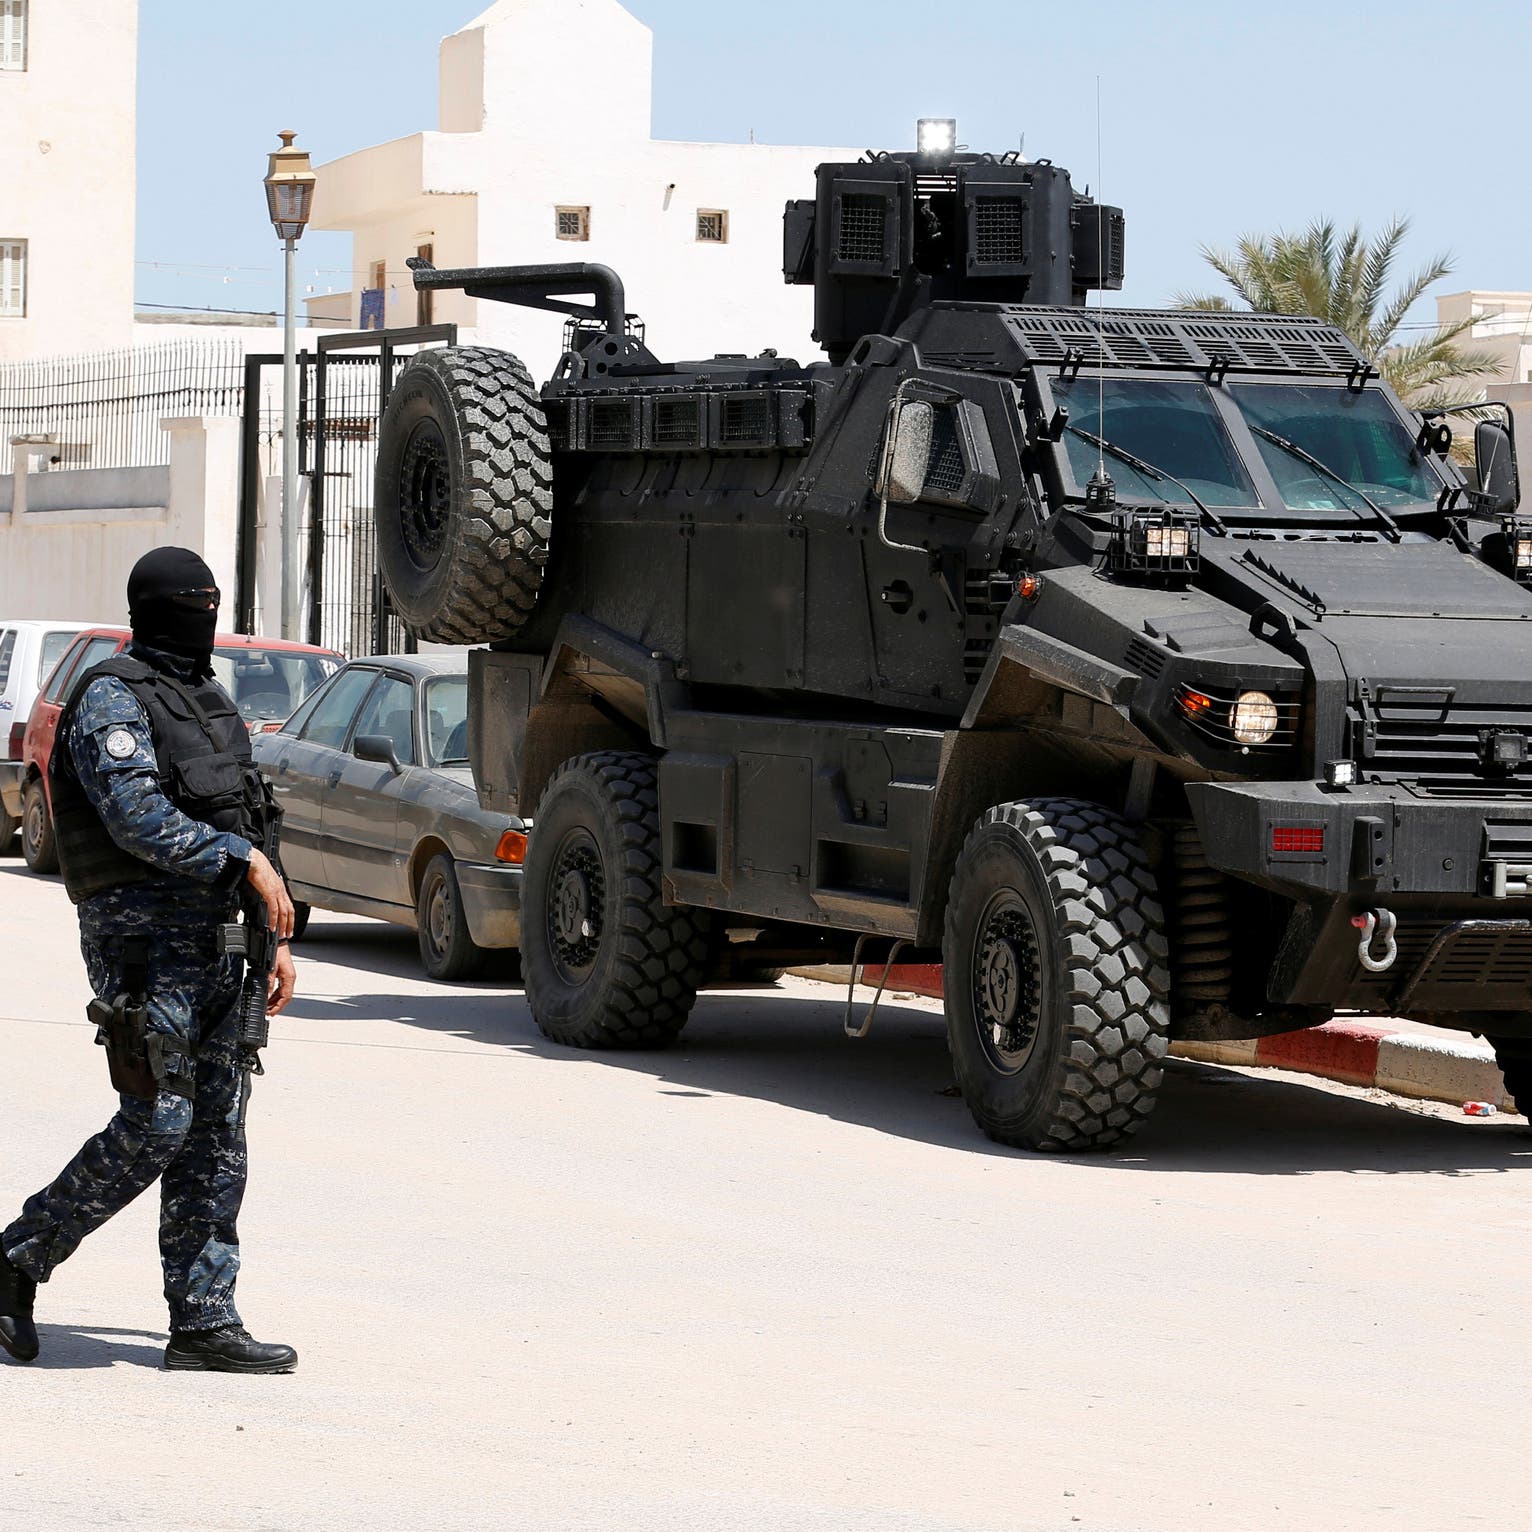 تبادل إطلاق نار بين الشرطة ومتشددين في تونس